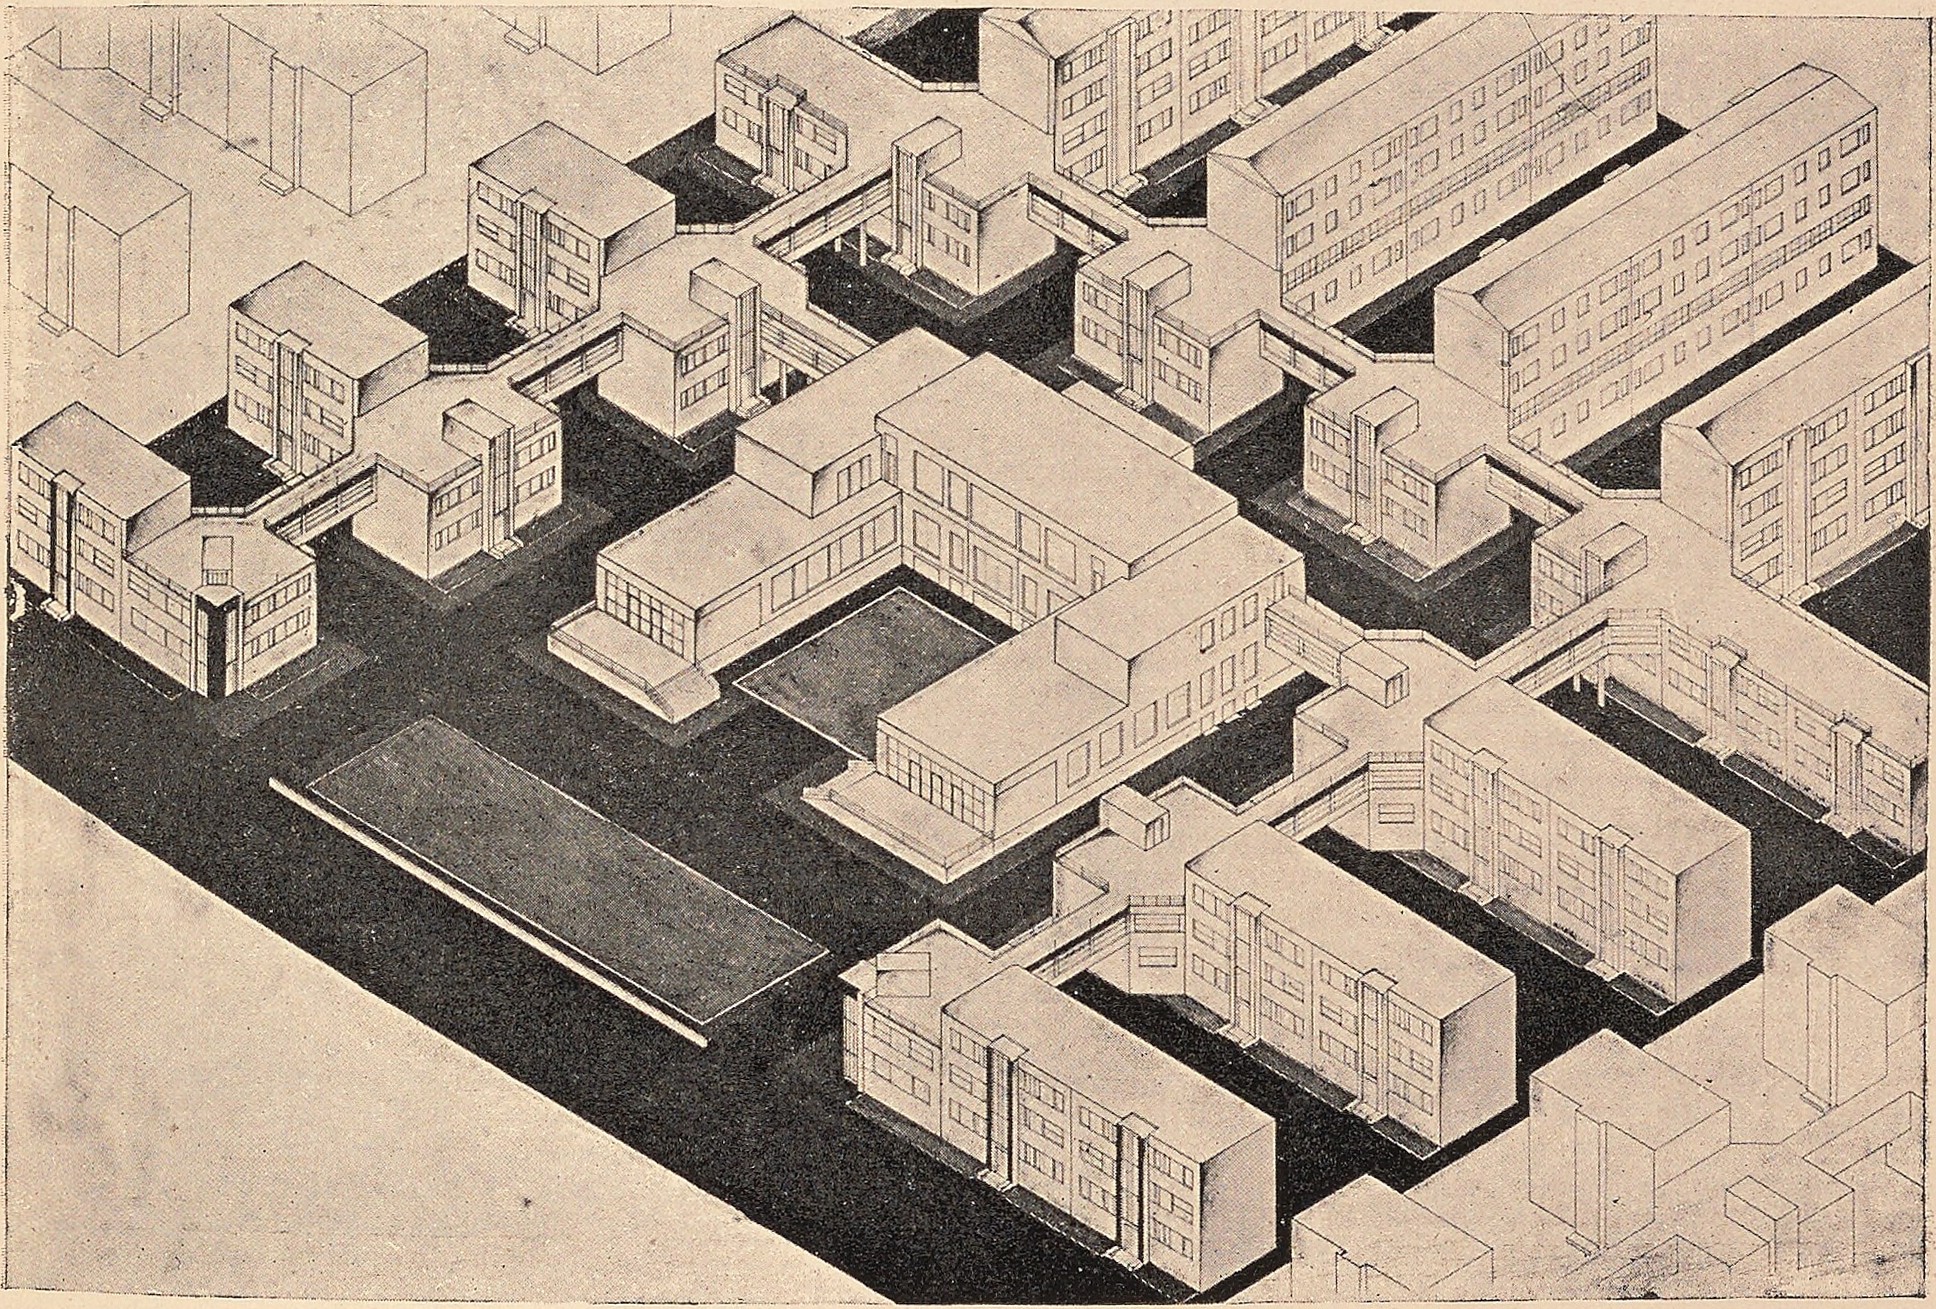 Планировка жилого коммунального городского квартала. Работа студента М. А. Туркус, 1926 г.